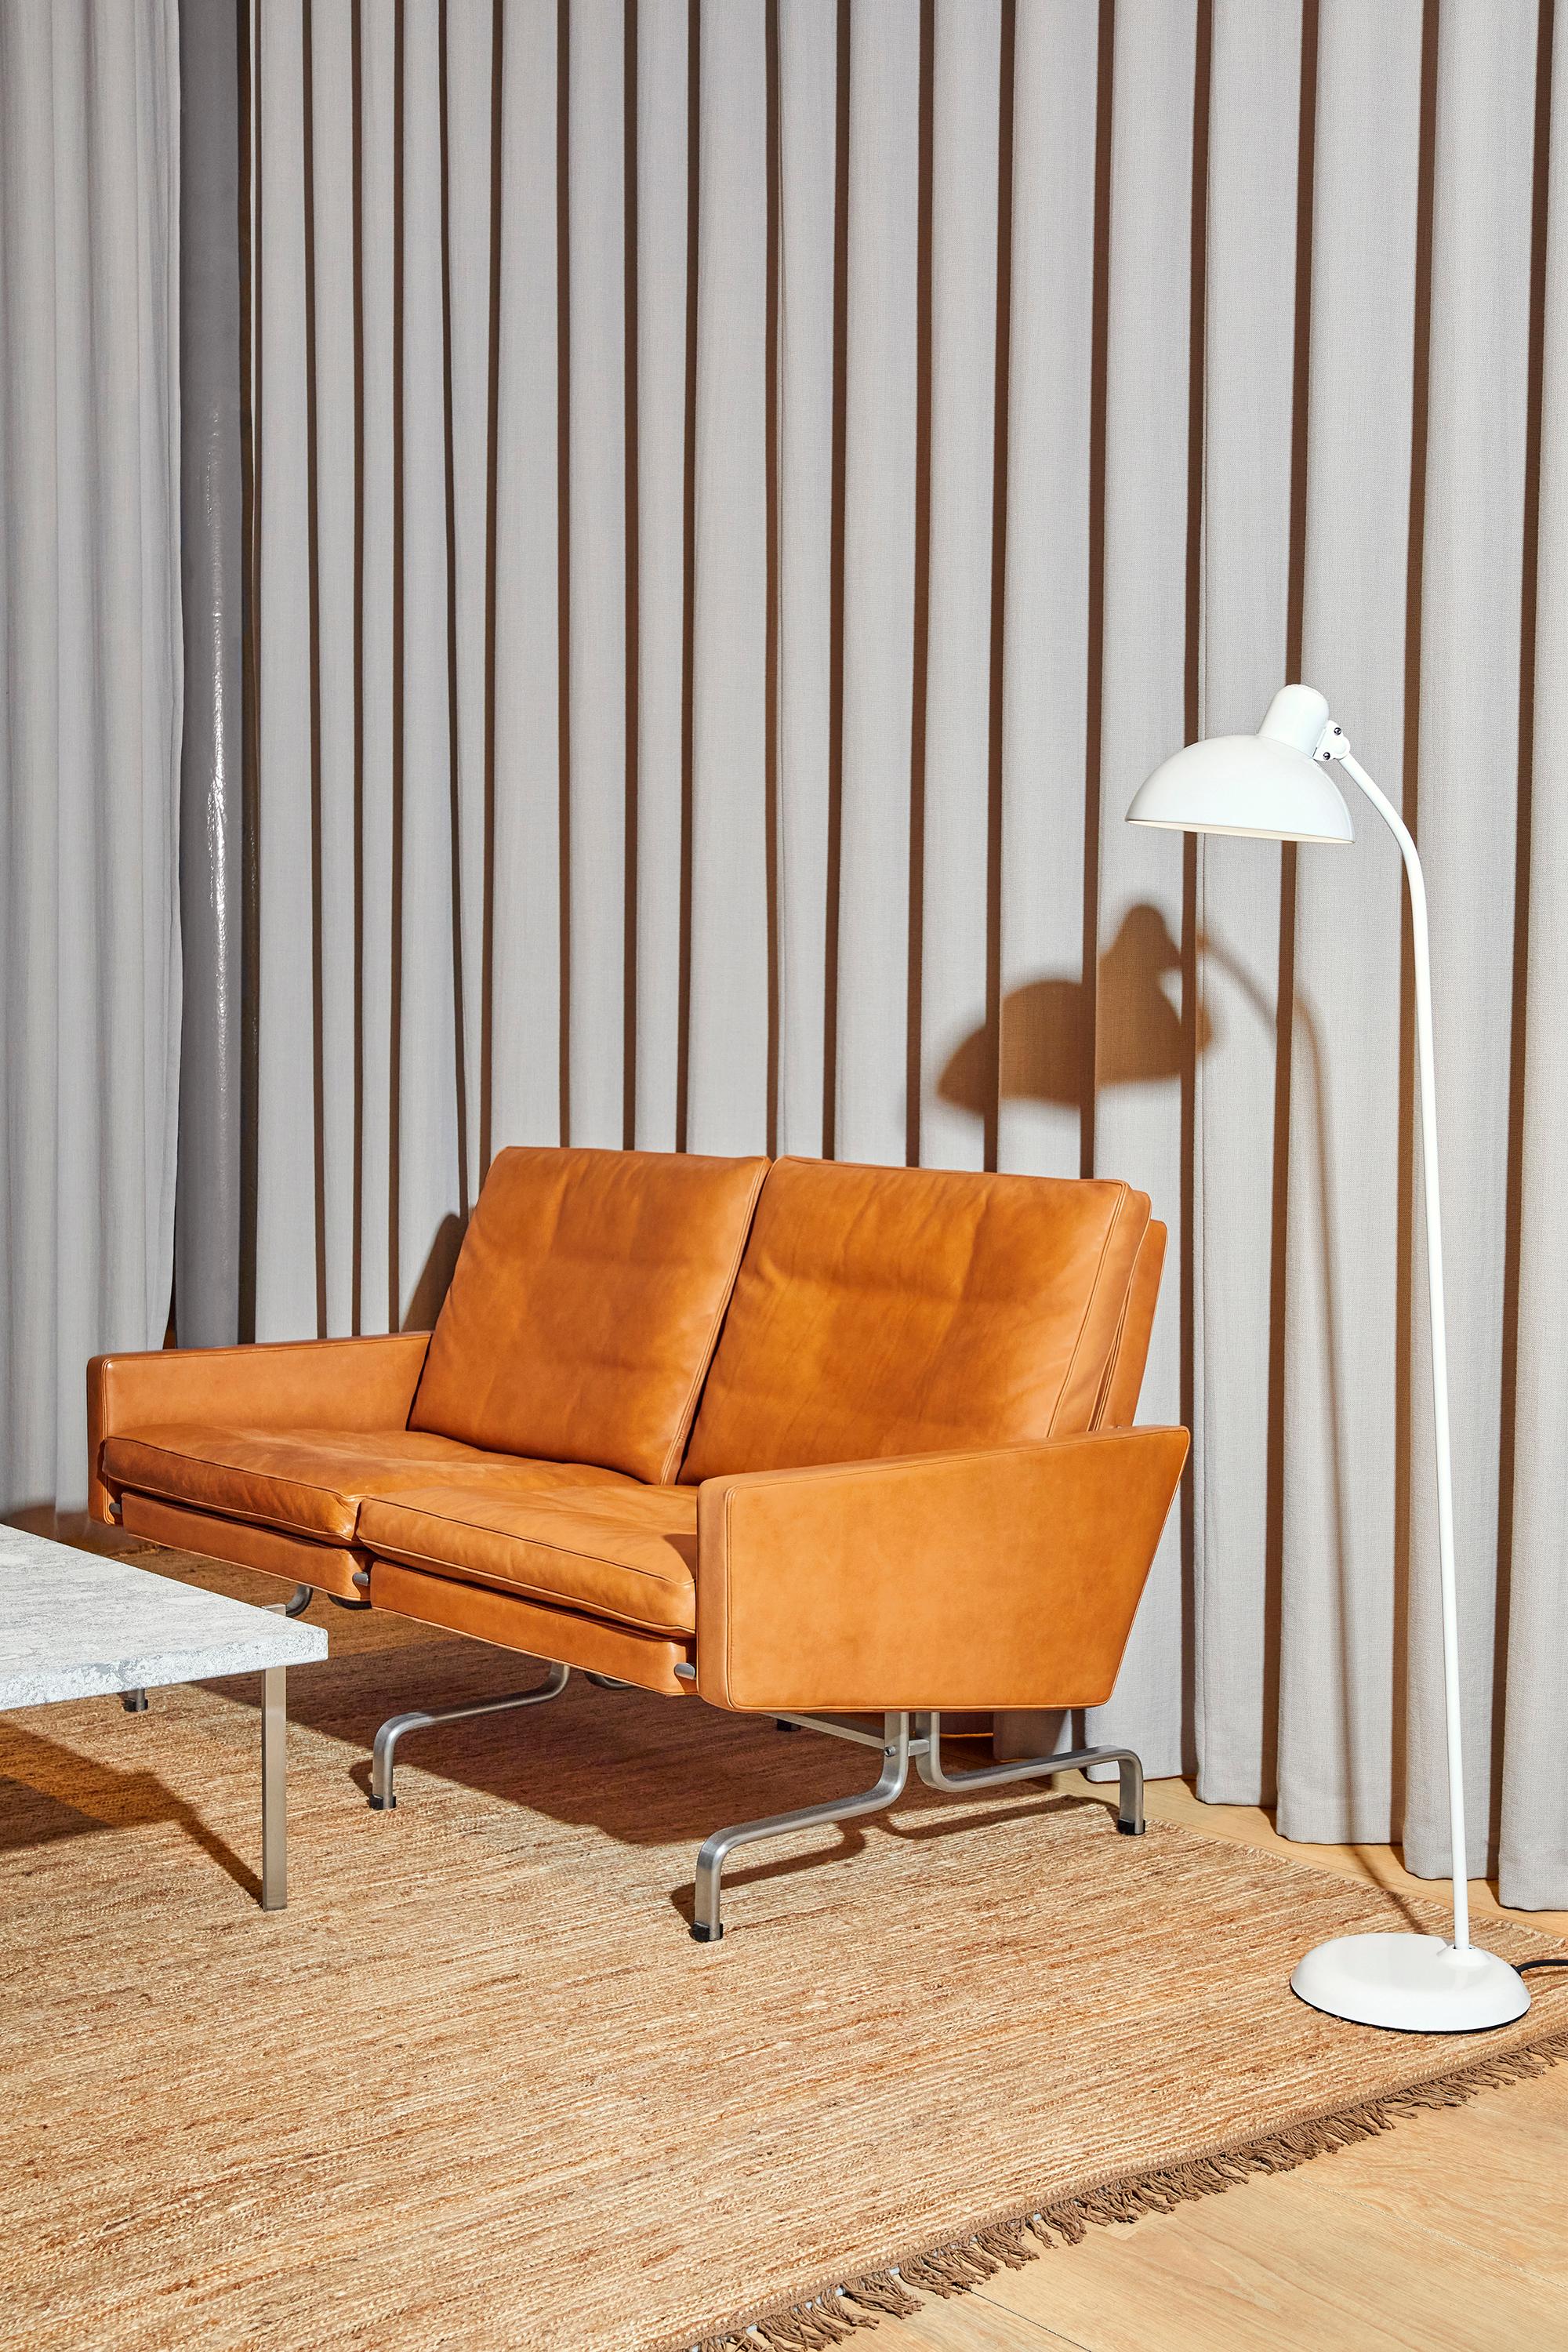 Poul Kjærholm 'PK31' 2-Sitzer Sofa für Fritz Hansen in Leder (Kat. 5)

Fritz Hansen wurde 1872 gegründet und ist zum Synonym für legendäres dänisches Design geworden. Die Marke kombiniert zeitlose Handwerkskunst mit einem Schwerpunkt auf